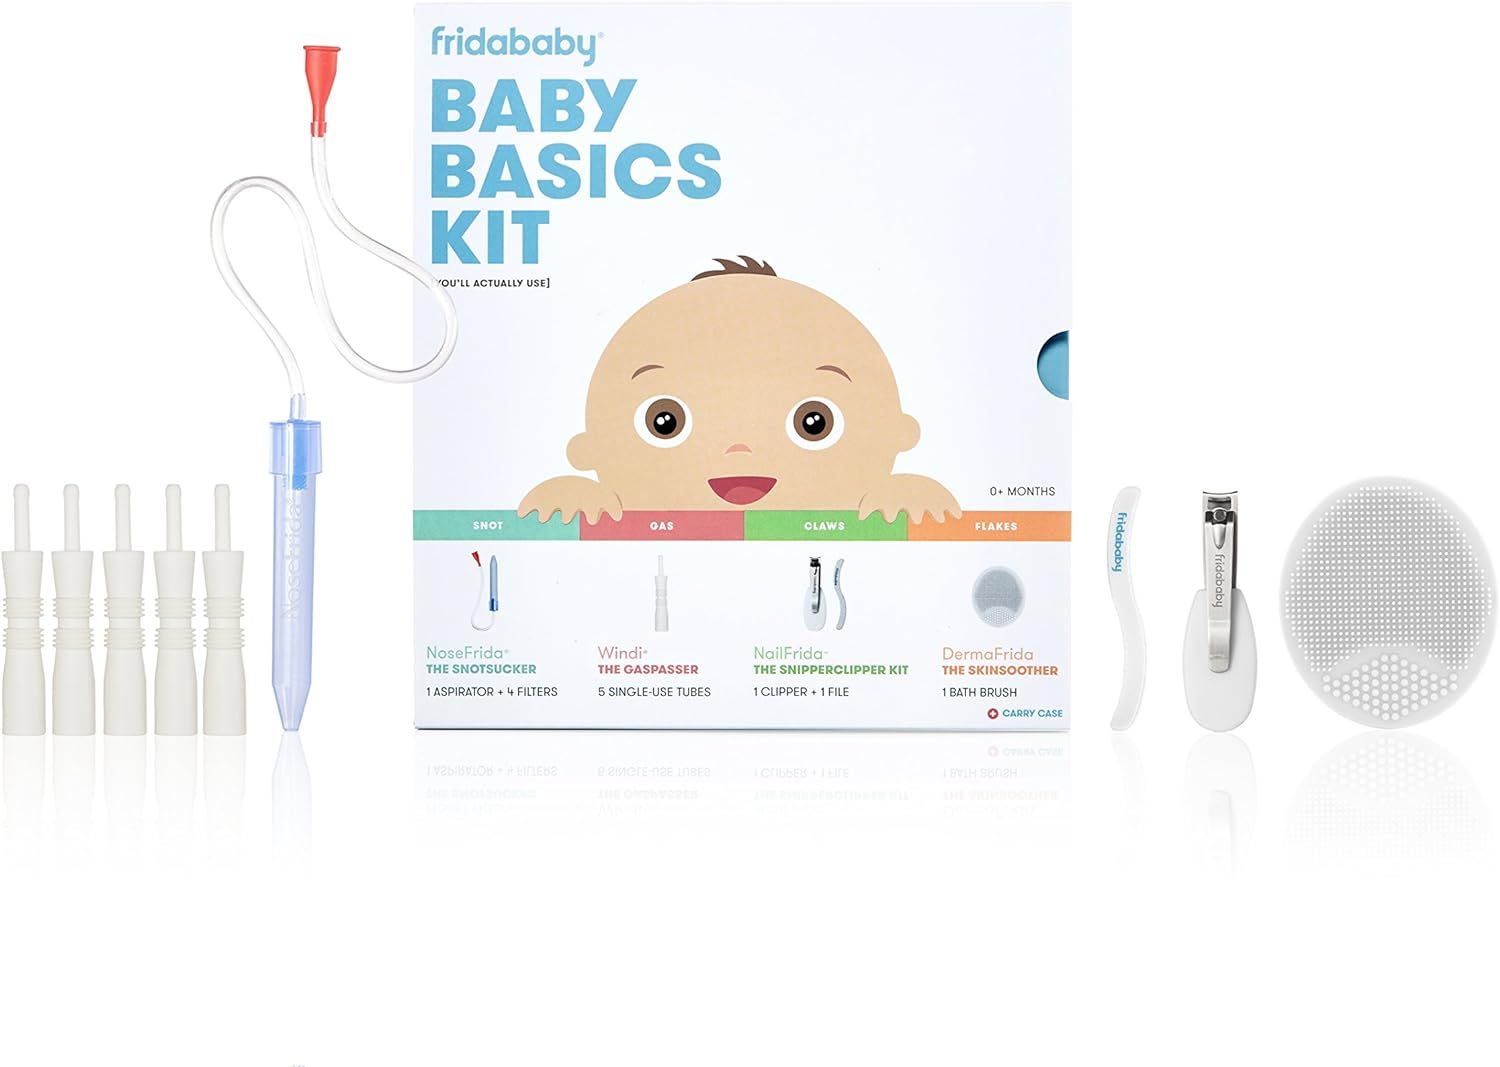 Baby Basics Kit by FridaBaby |Includes NoseFrida, NailFrida, Windi, DermaFrida + Silicone Carry C... | Amazon (US)